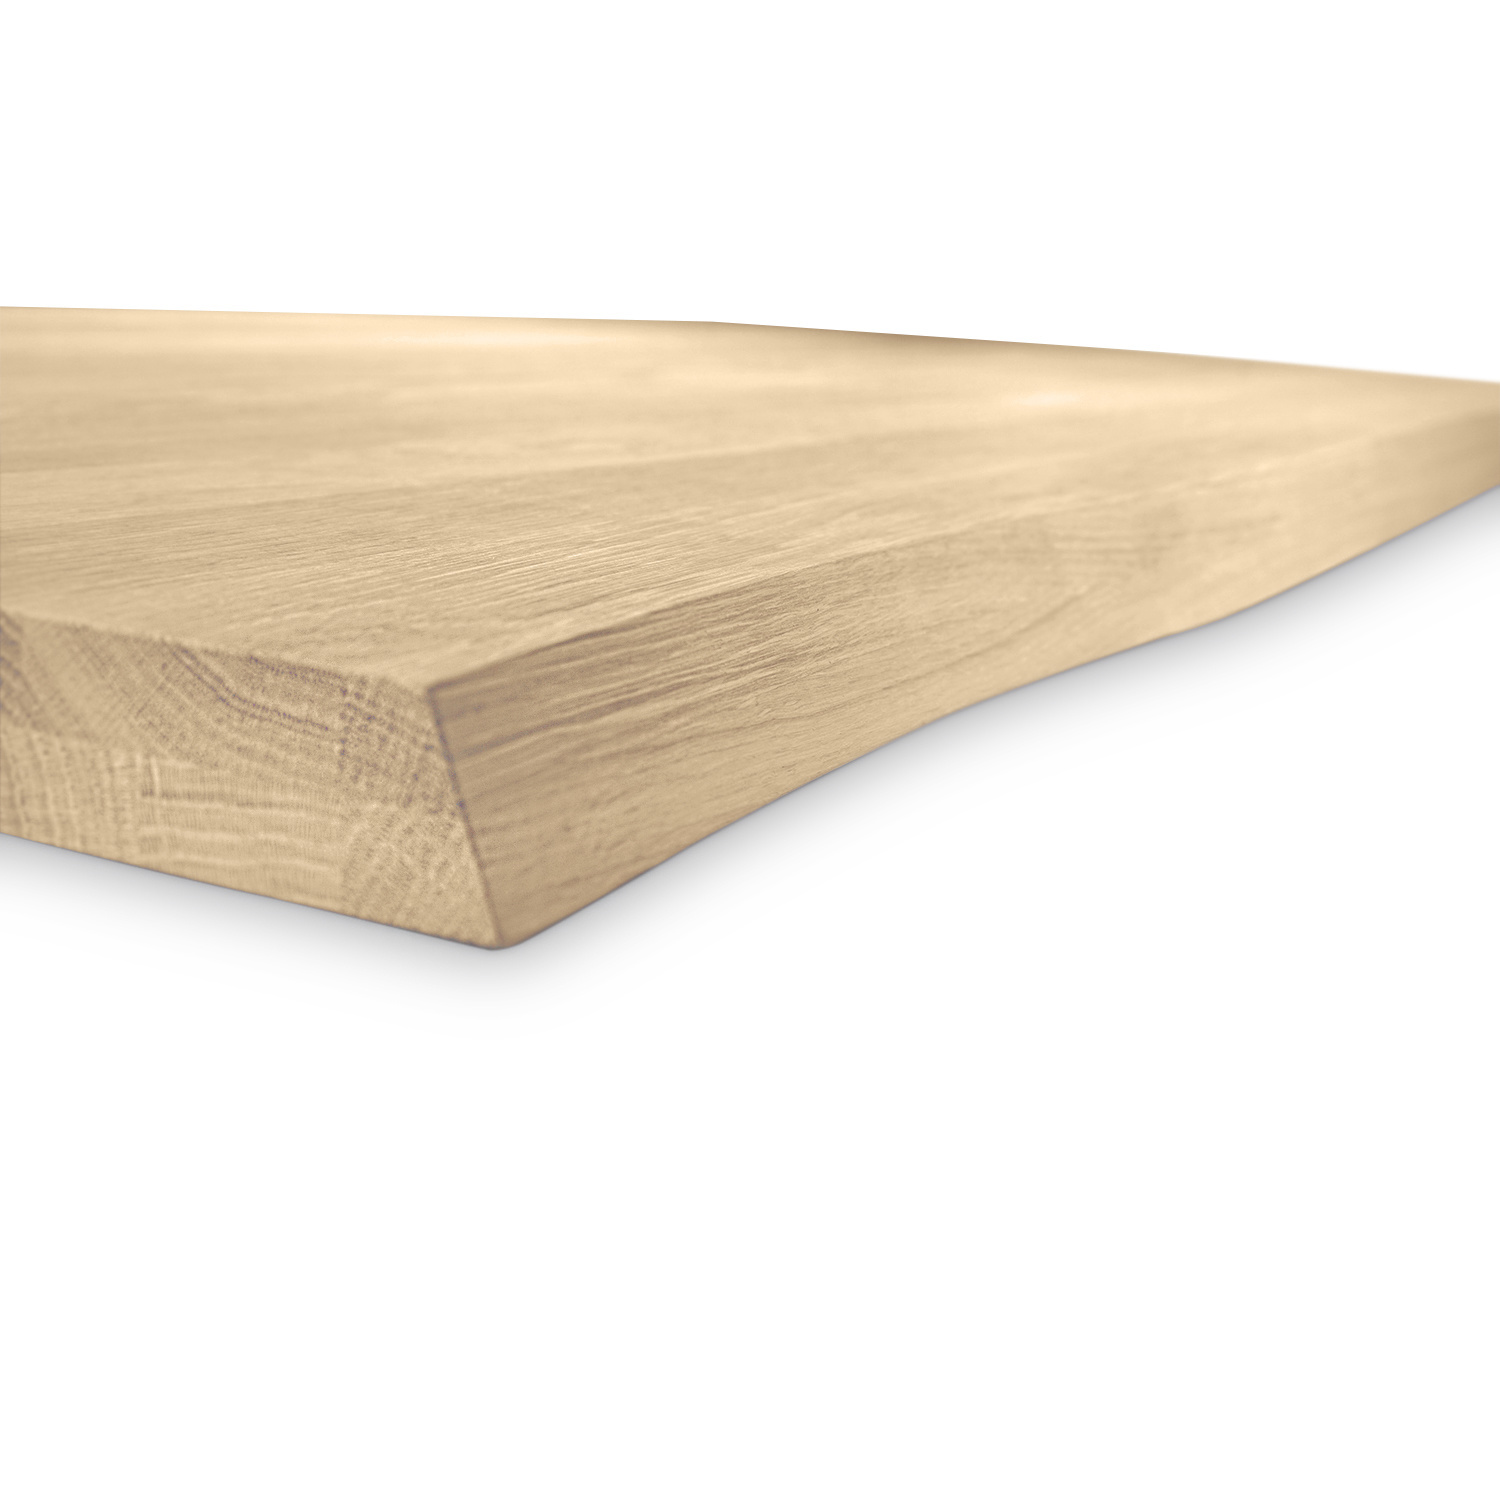  Tischplatte Eiche - mit Baumkante (Optik)  - nach Maß - 2,7 cm dick (1-Schicht) - Breite Lamellen (10 - 12 cm breit) - Eichenholz rustikal mit natürlichen Baumkant - verleimt & künstlich getrocknet (HF 8-12%) - 50-120x50-248 cm